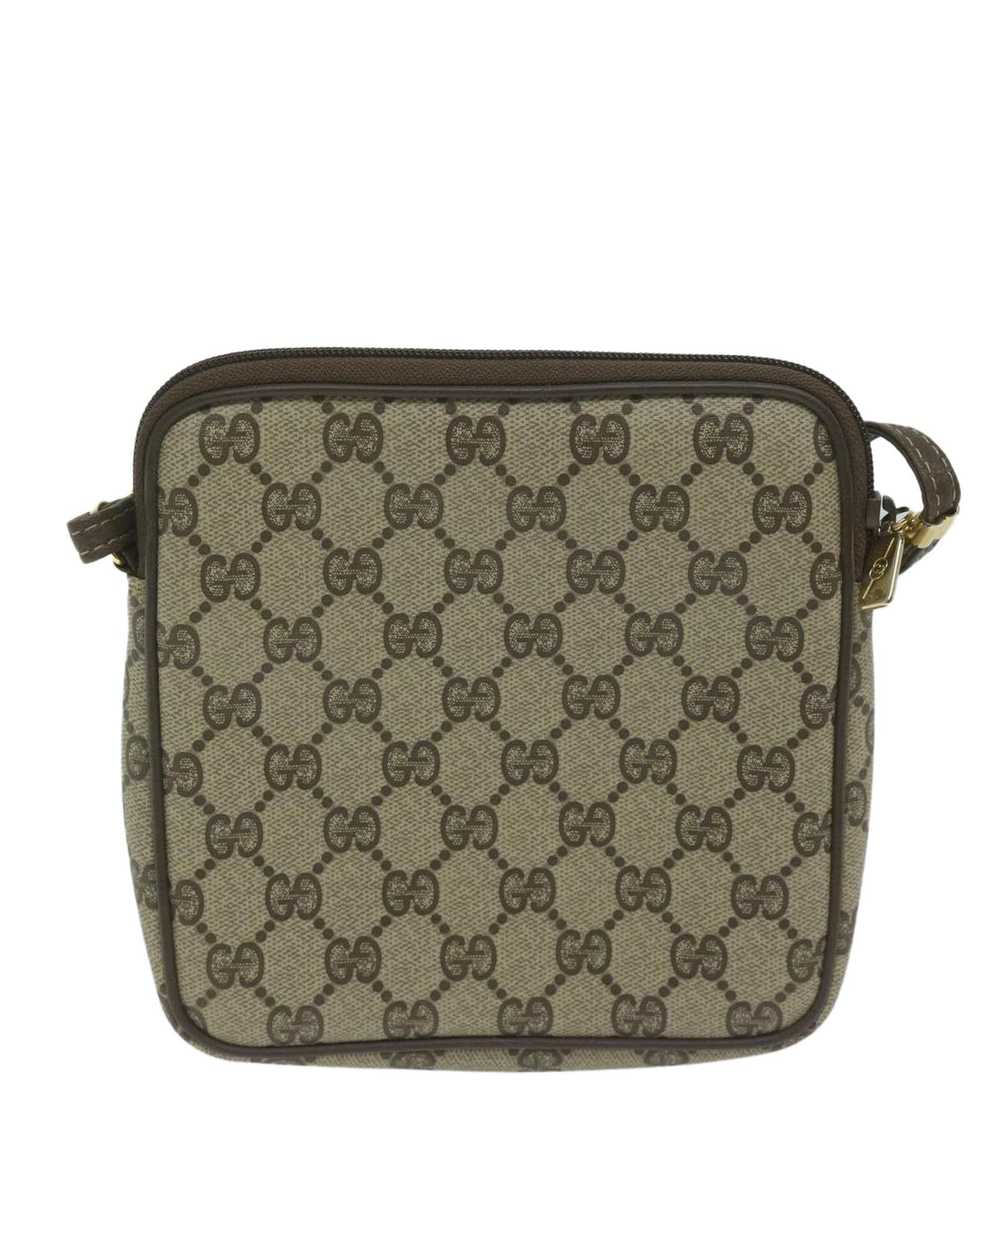 Gucci Beige GG Supreme Shoulder Bag in PVC Leathe… - image 2